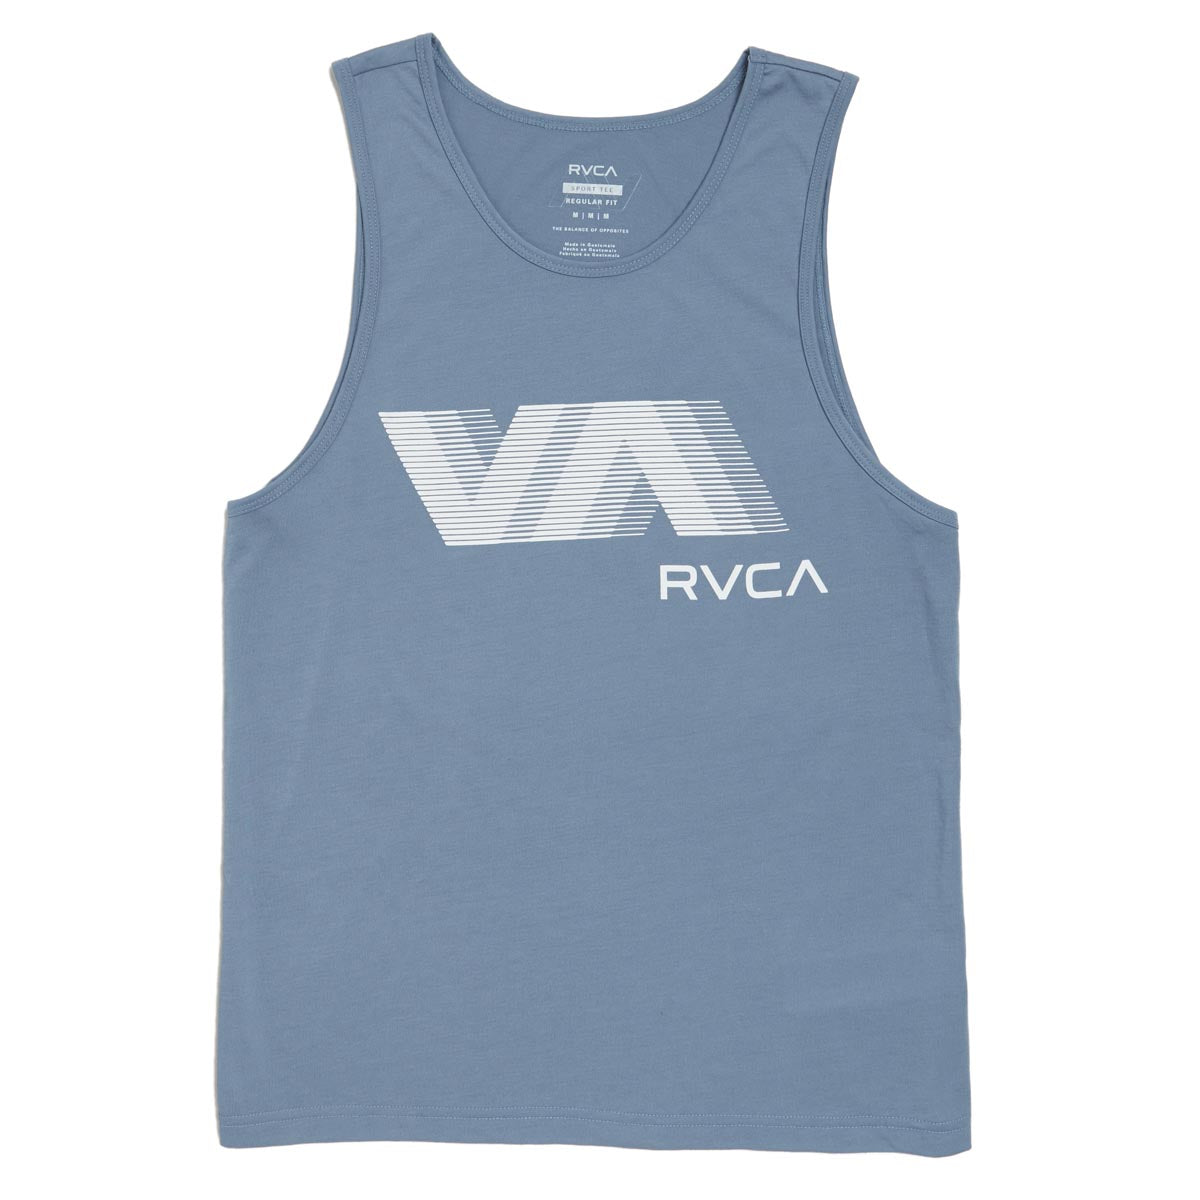 RVCA VA Blur Tank Top - Blue Tack image 1